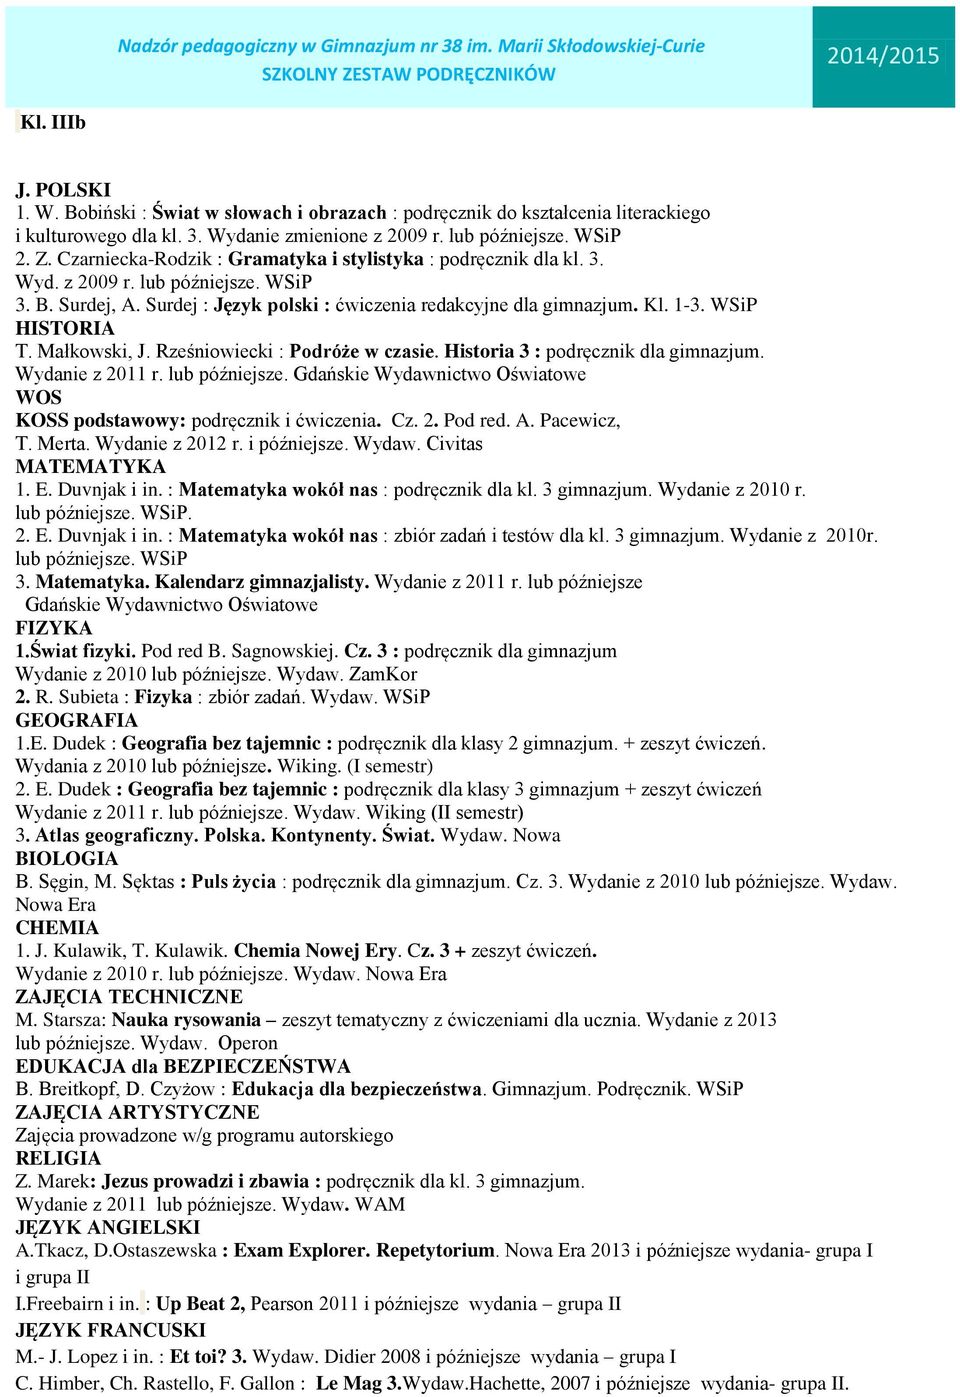 Wydanie z 2013 lub późniejsze. Wydaw. Operon A.Tkacz, D.Ostaszewska : Exam Explorer. Repetytorium. 2013 i późniejsze wydania- grupa I i grupa II I.Freebairn i in.